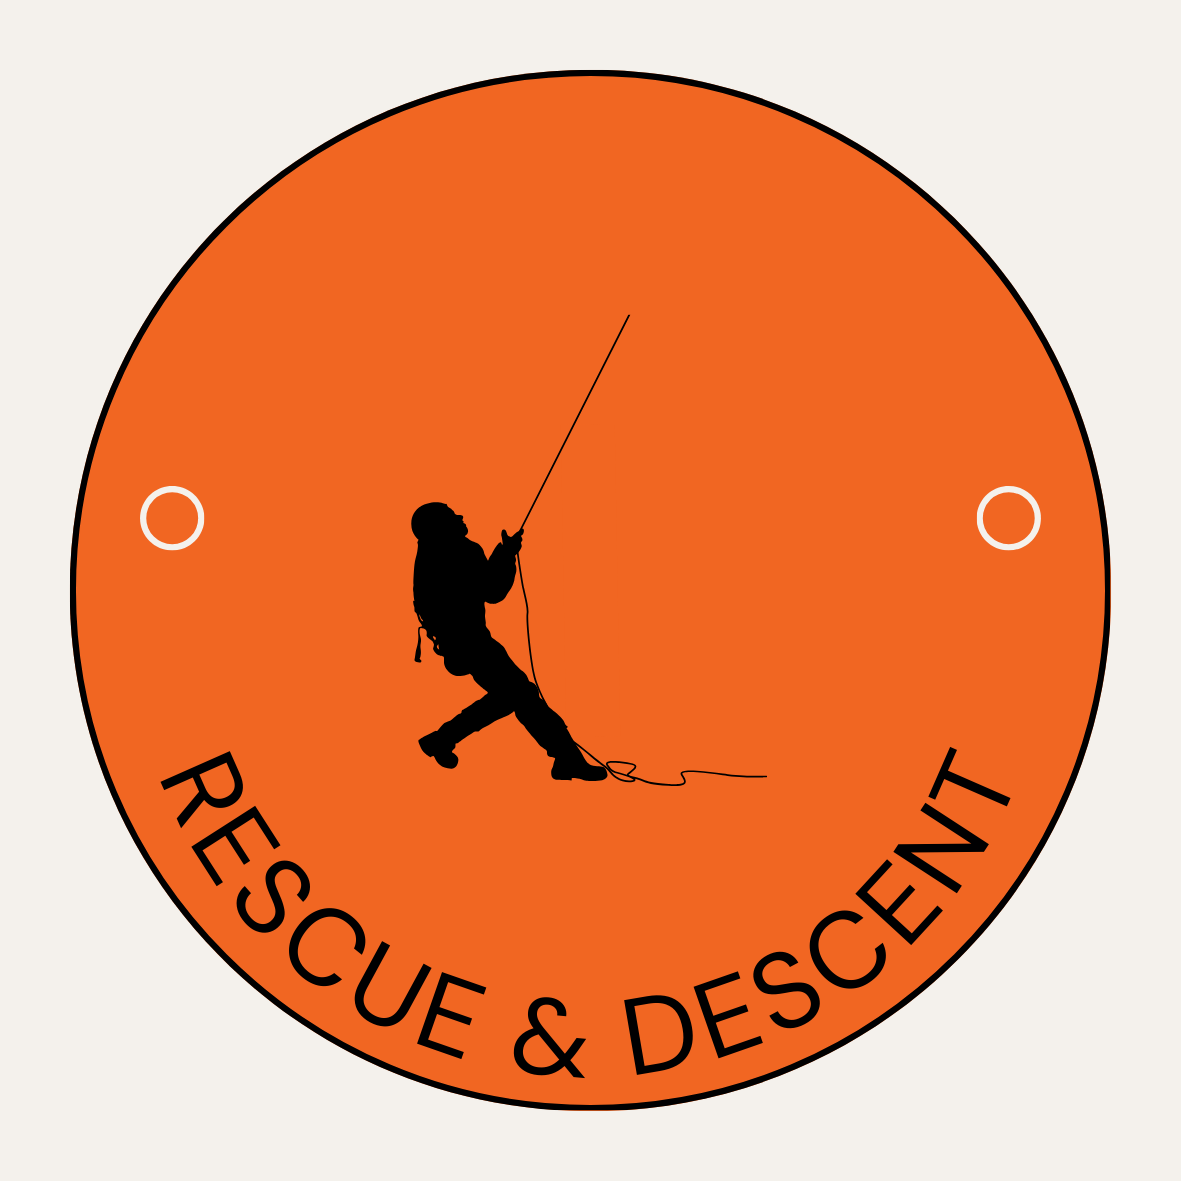 Rescue and Descent